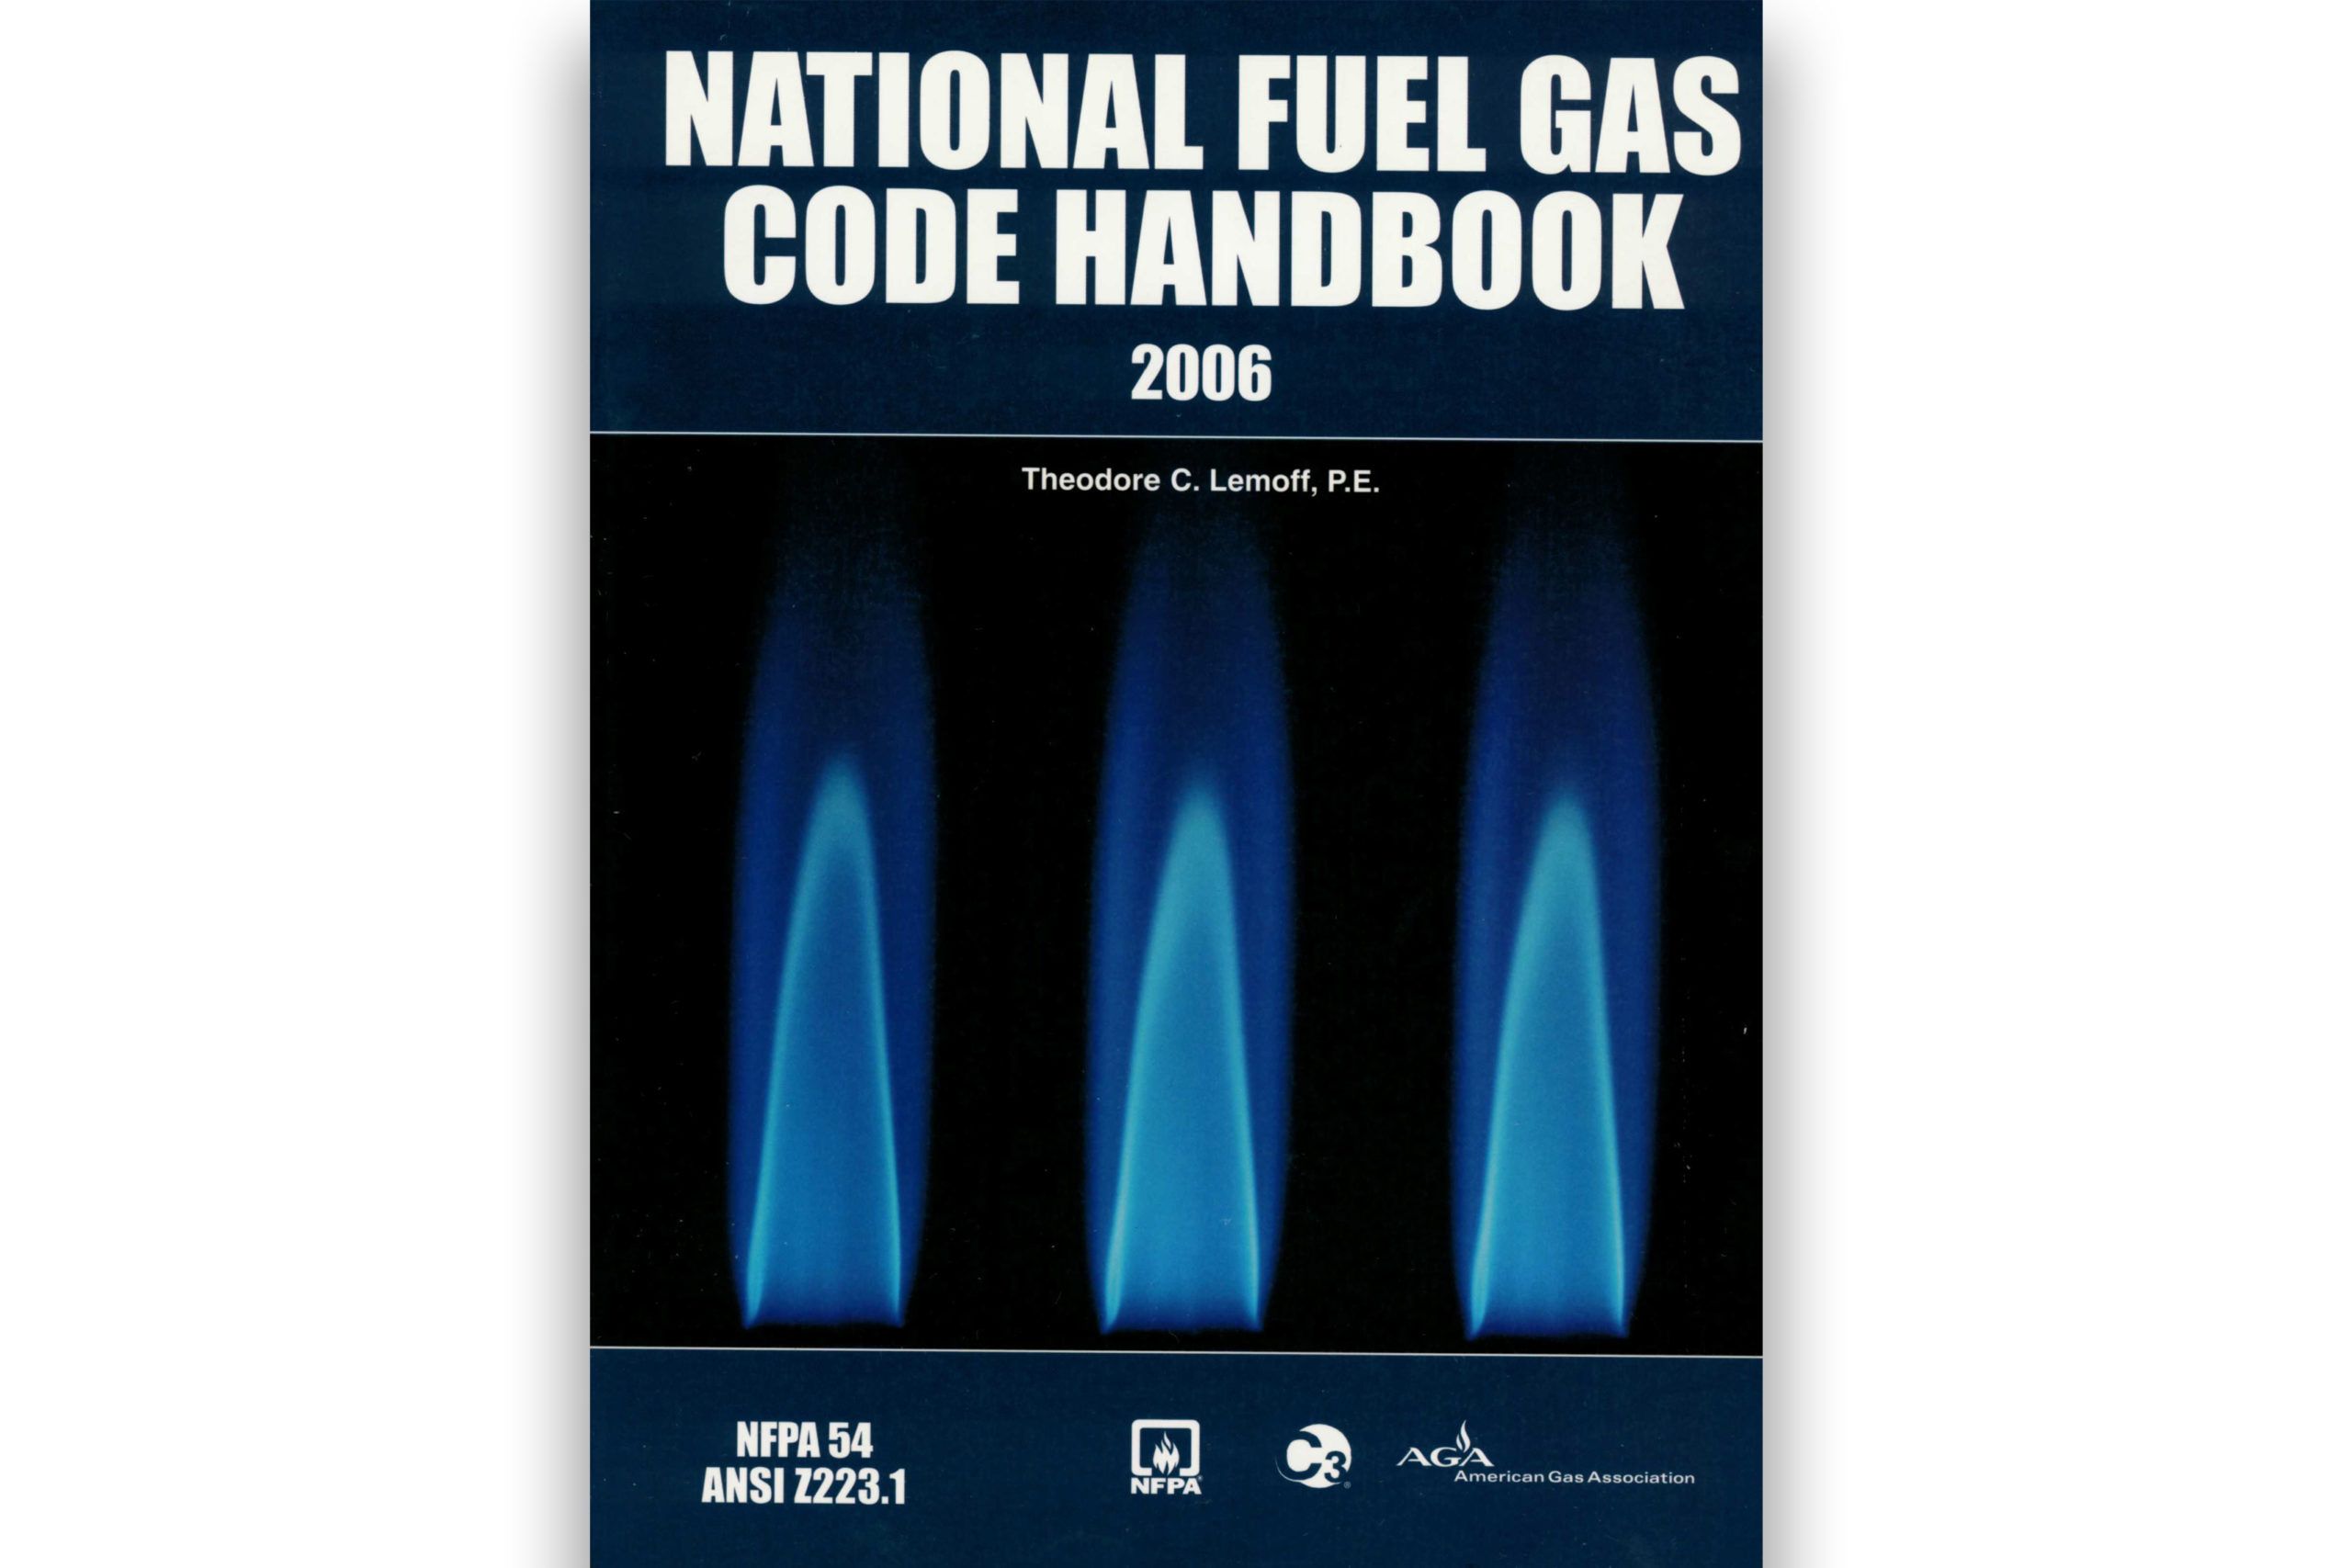 tienda-virtual-cfia-national-fuel-gas-code-handbook-tienda-cfia